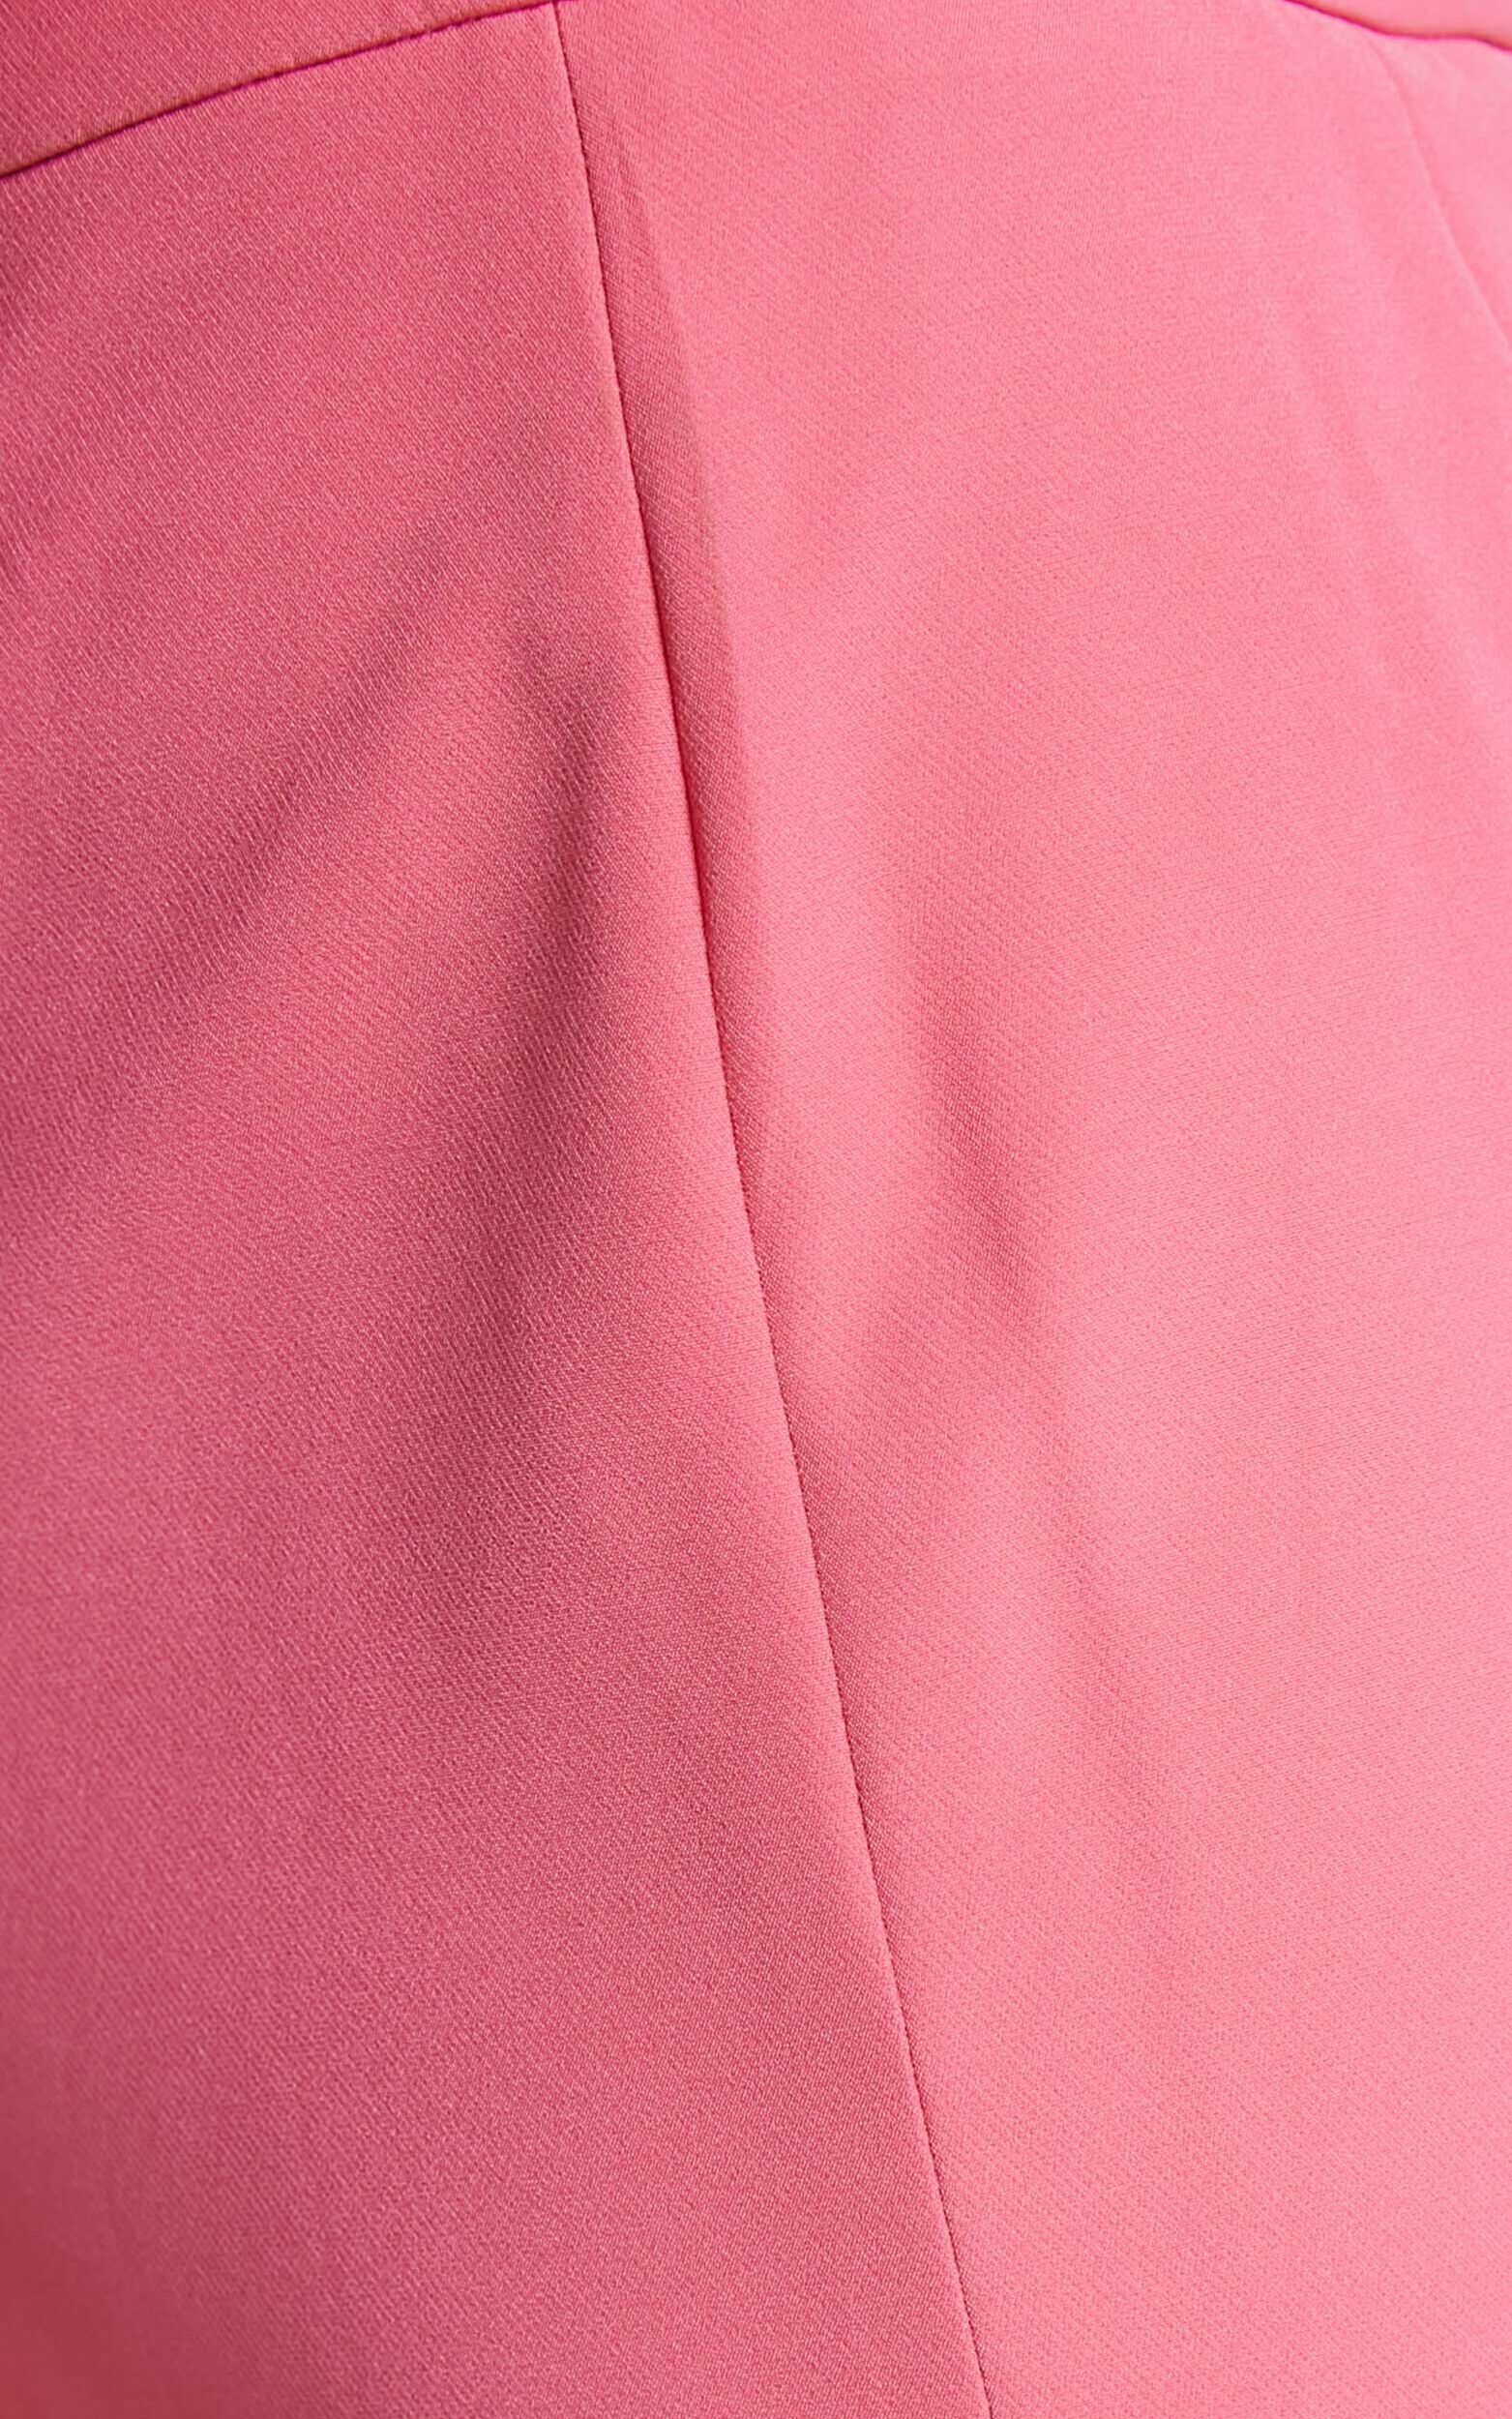 Shaima Mini Skirt - Split Low Rise Micro Skirt in Pink | Showpo